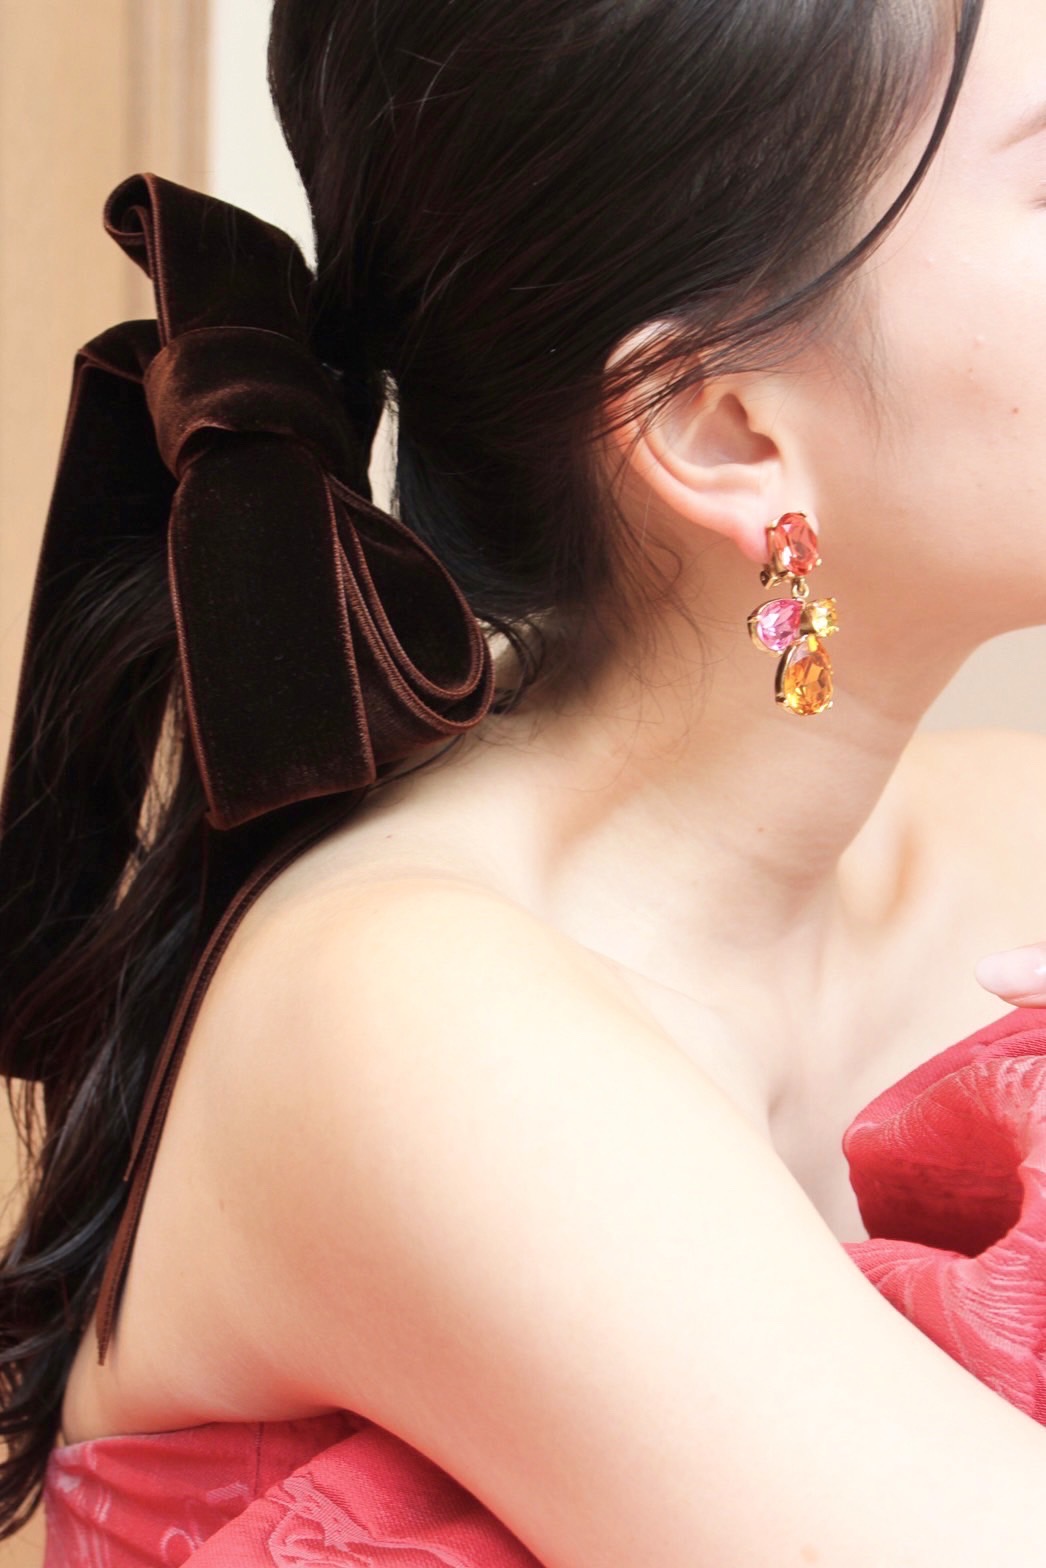 ザトリートドレッシング京都店がご紹介するオスカーデラレンタのイヤリングは色合いが可愛いイヤリング